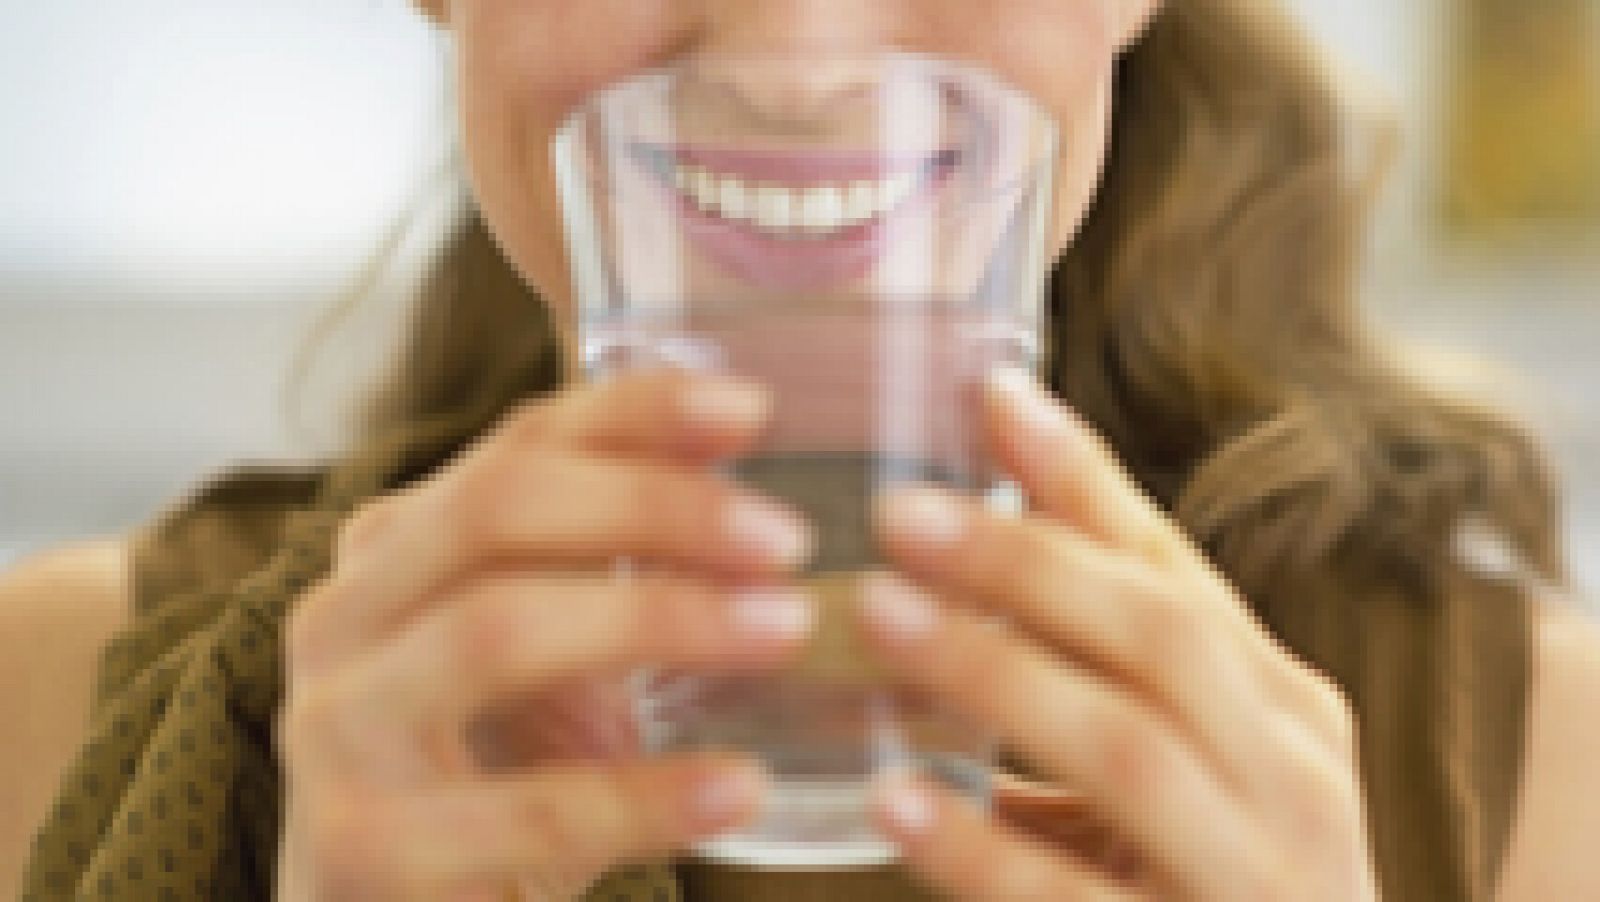 Mitos sobre alimentación: Beber agua durante las comida engorda